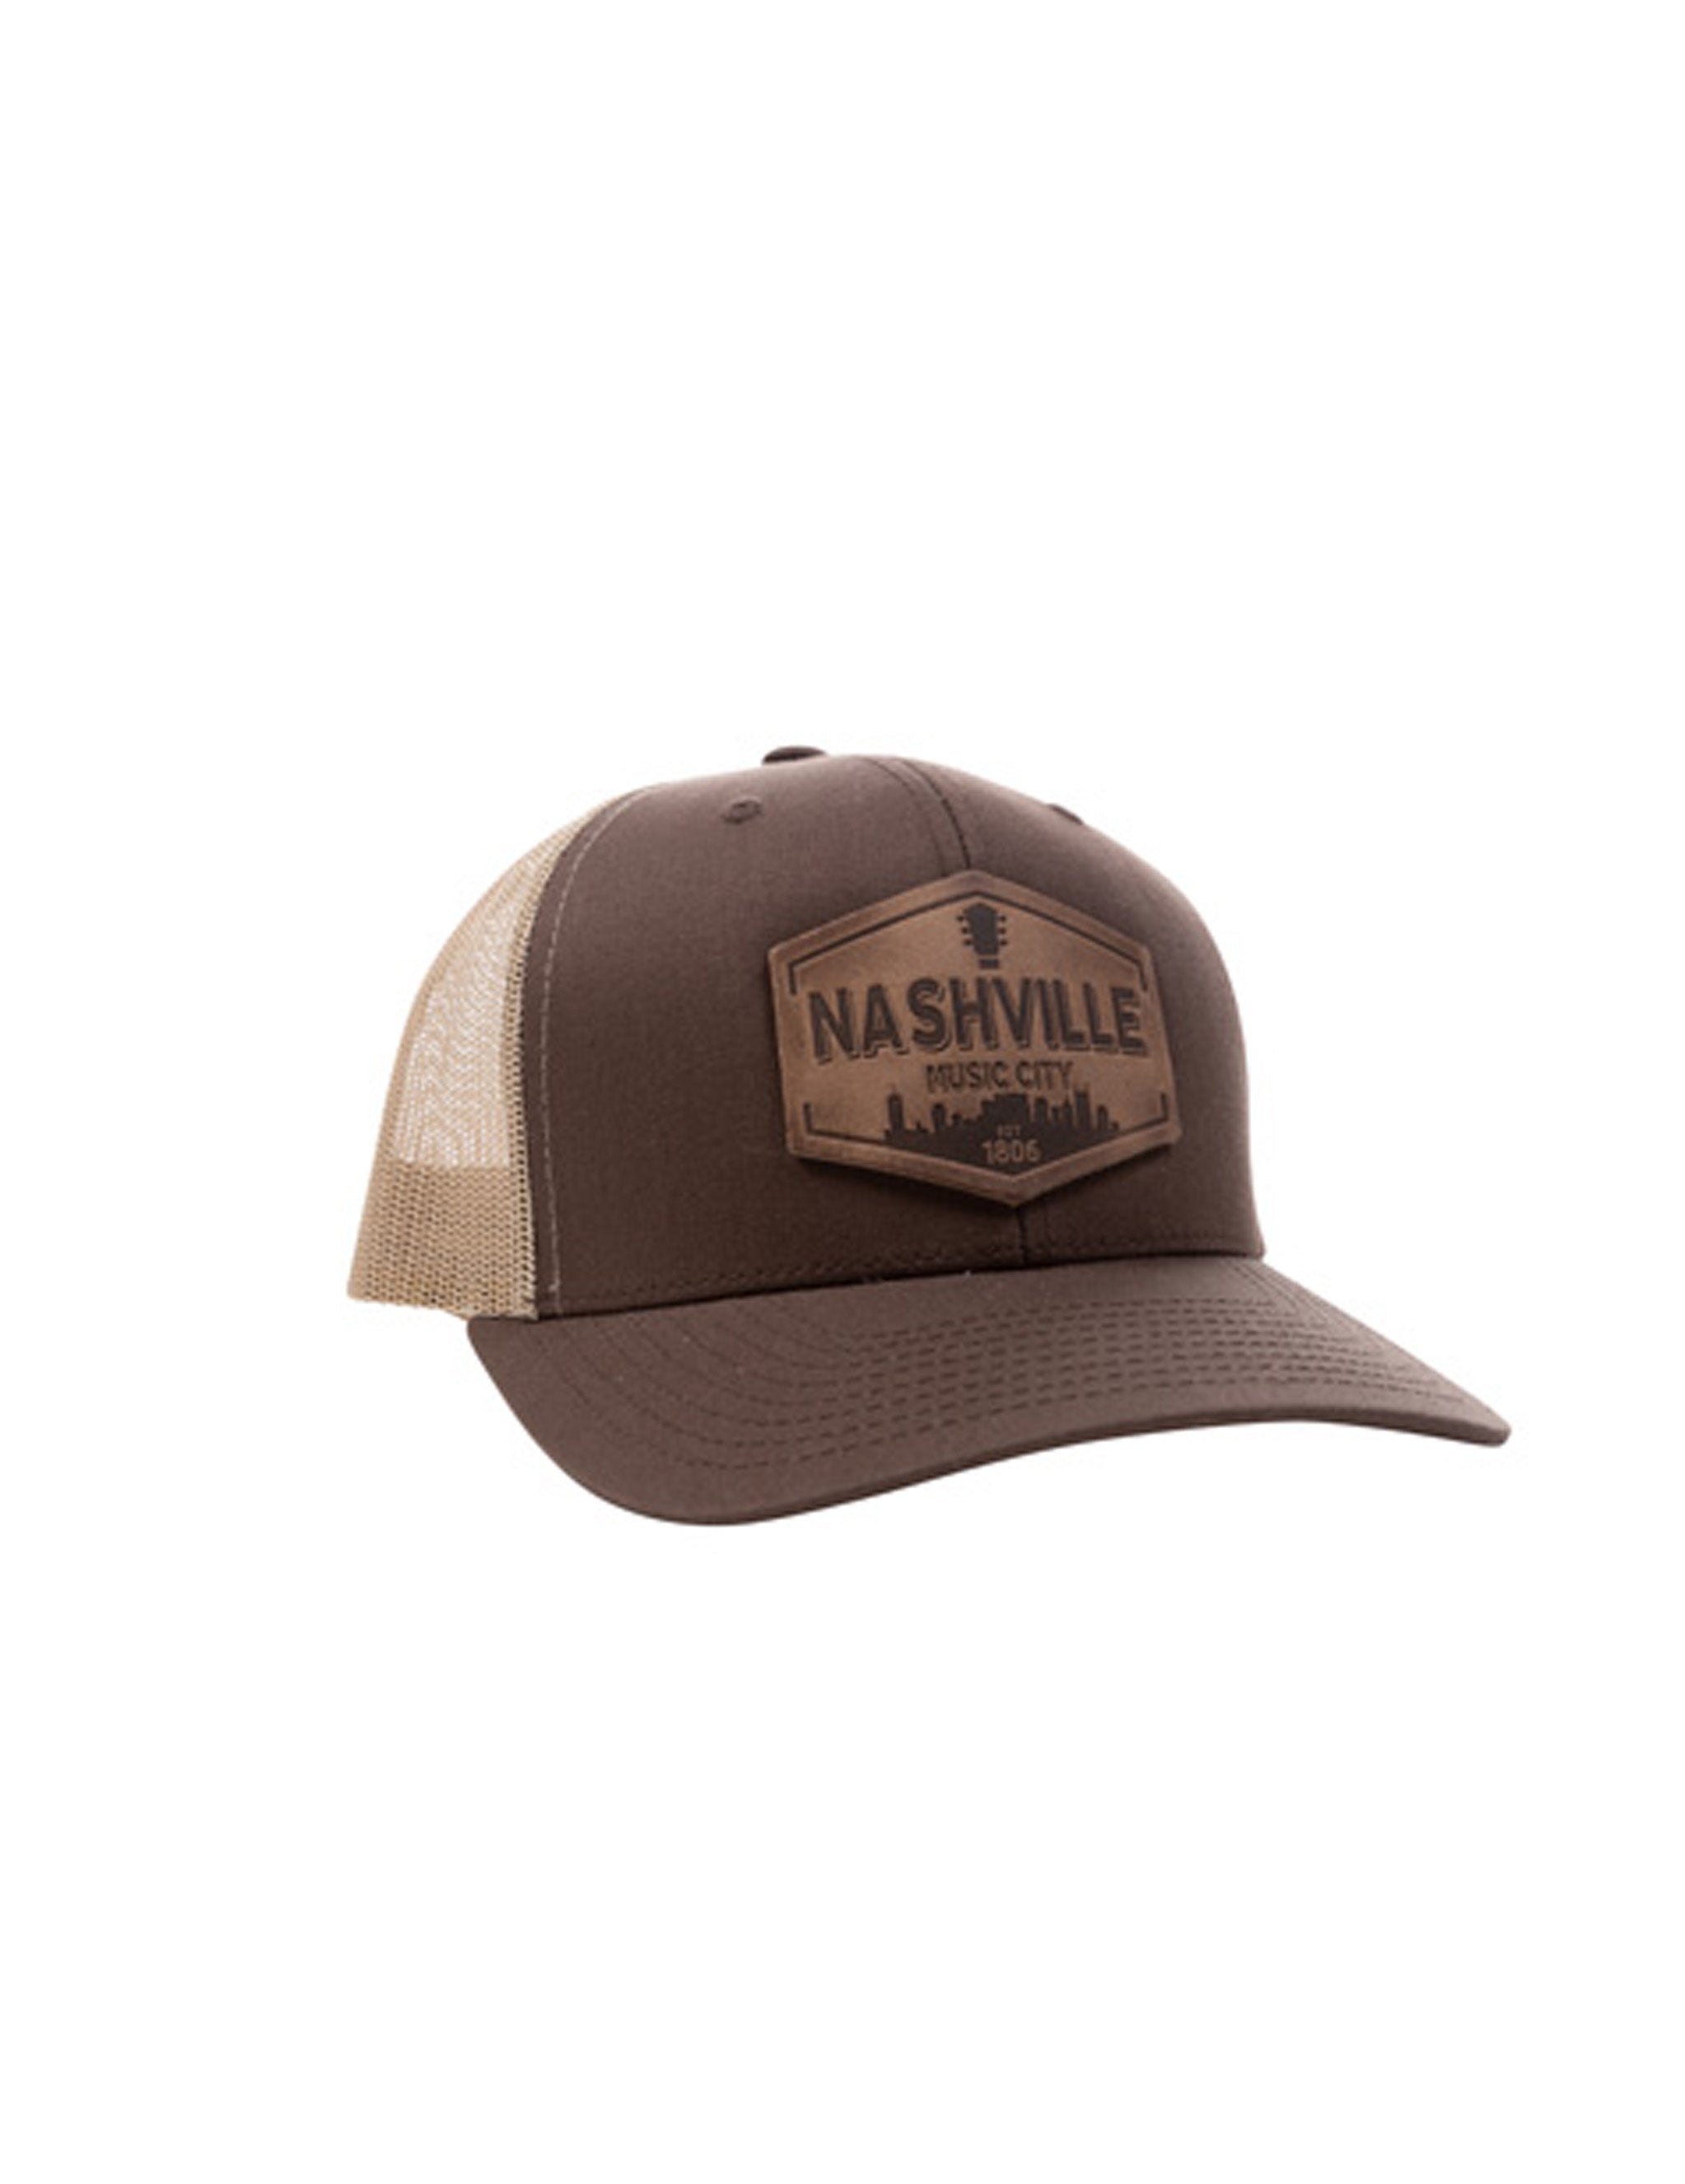 Nashville Leather Patch Cap